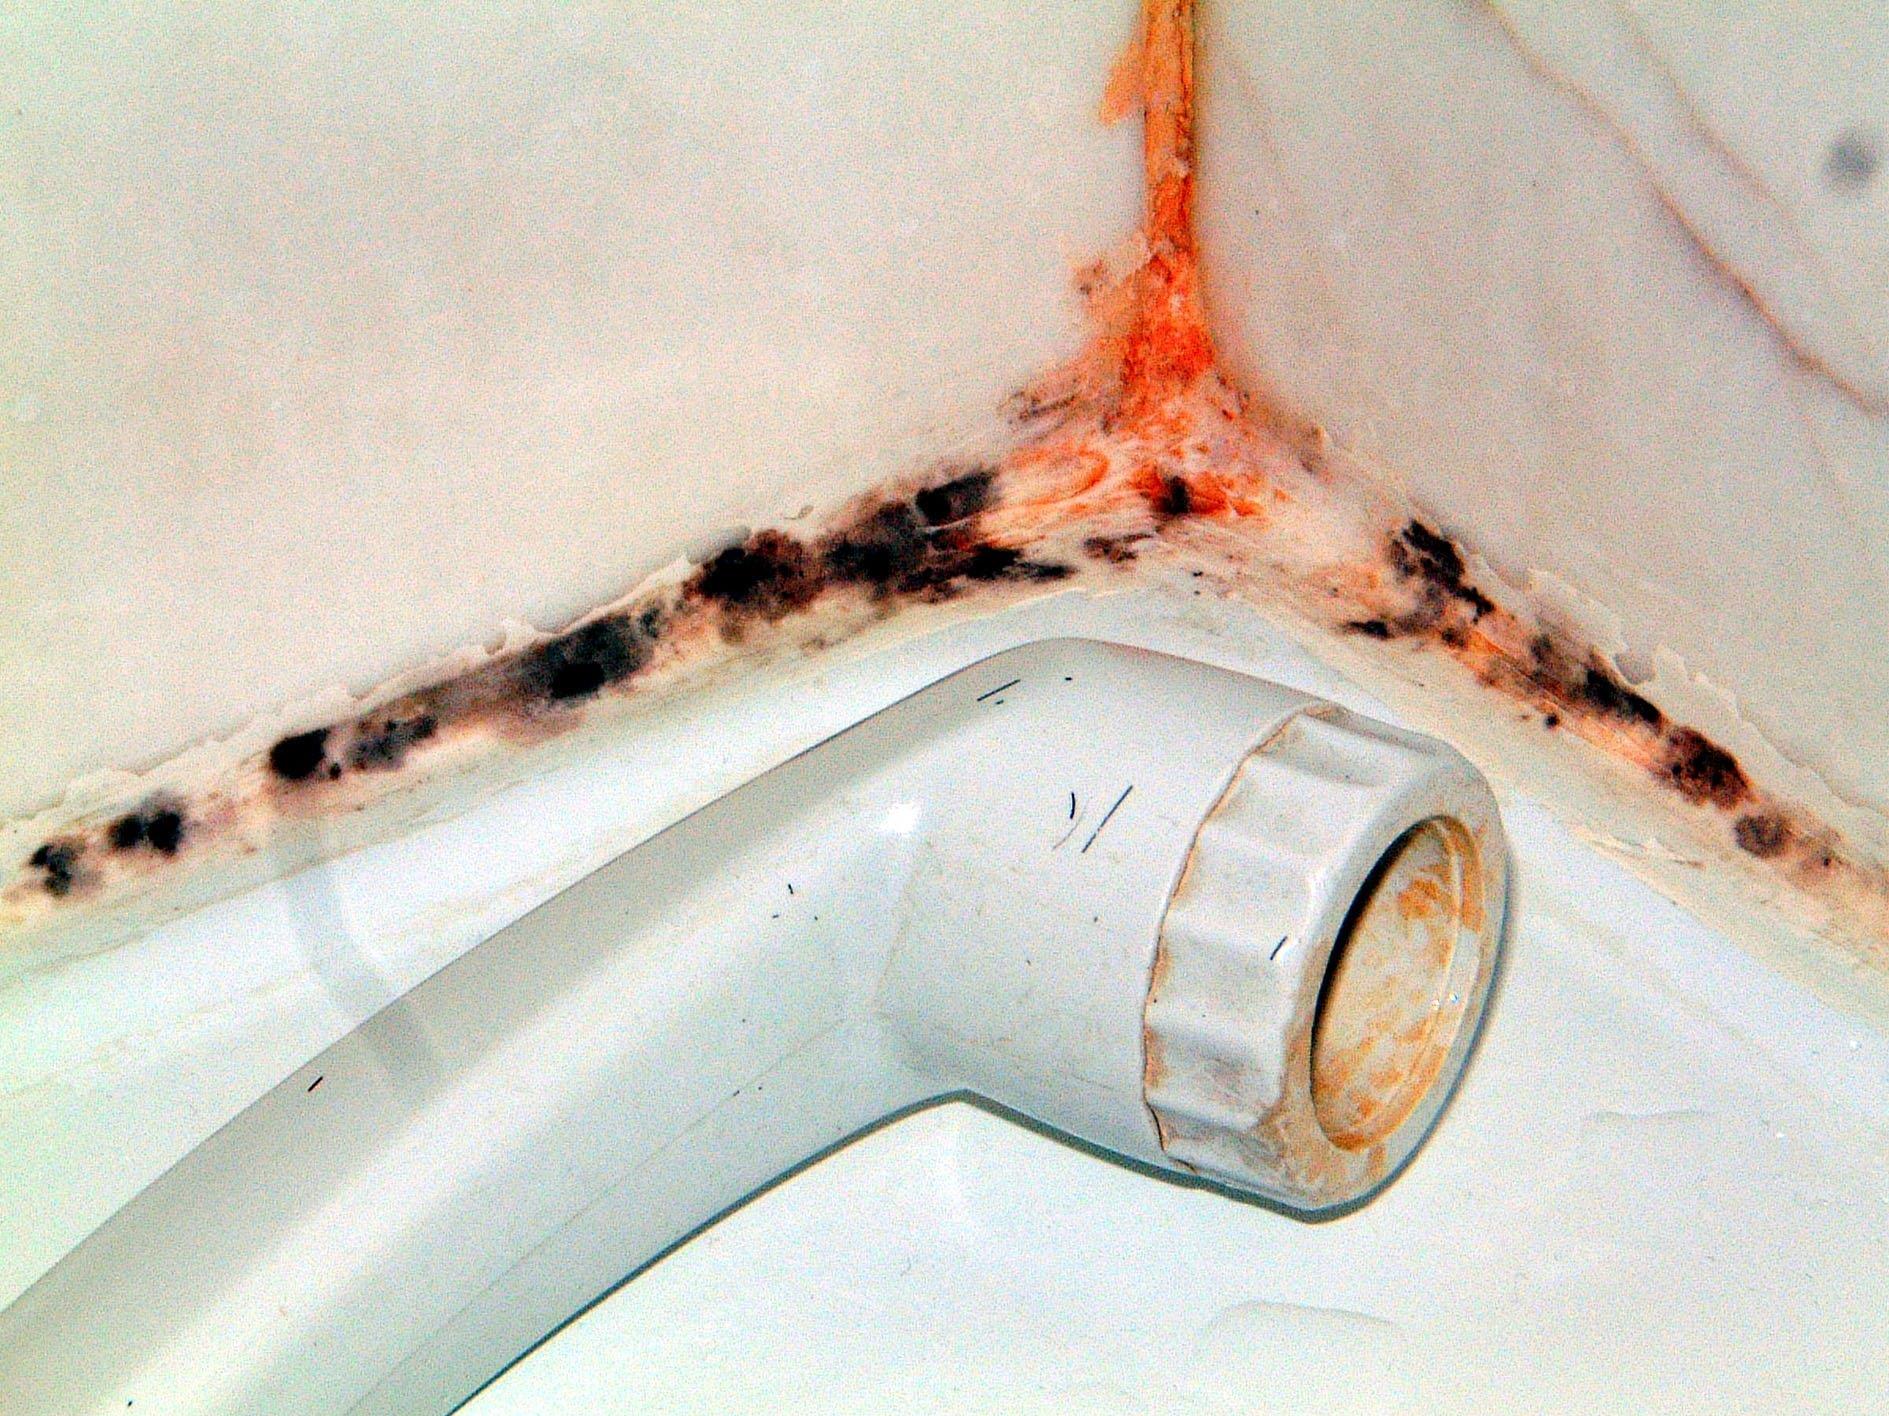 Besonders Badezimmer sind häufig von Schimmelbefall bedroht.